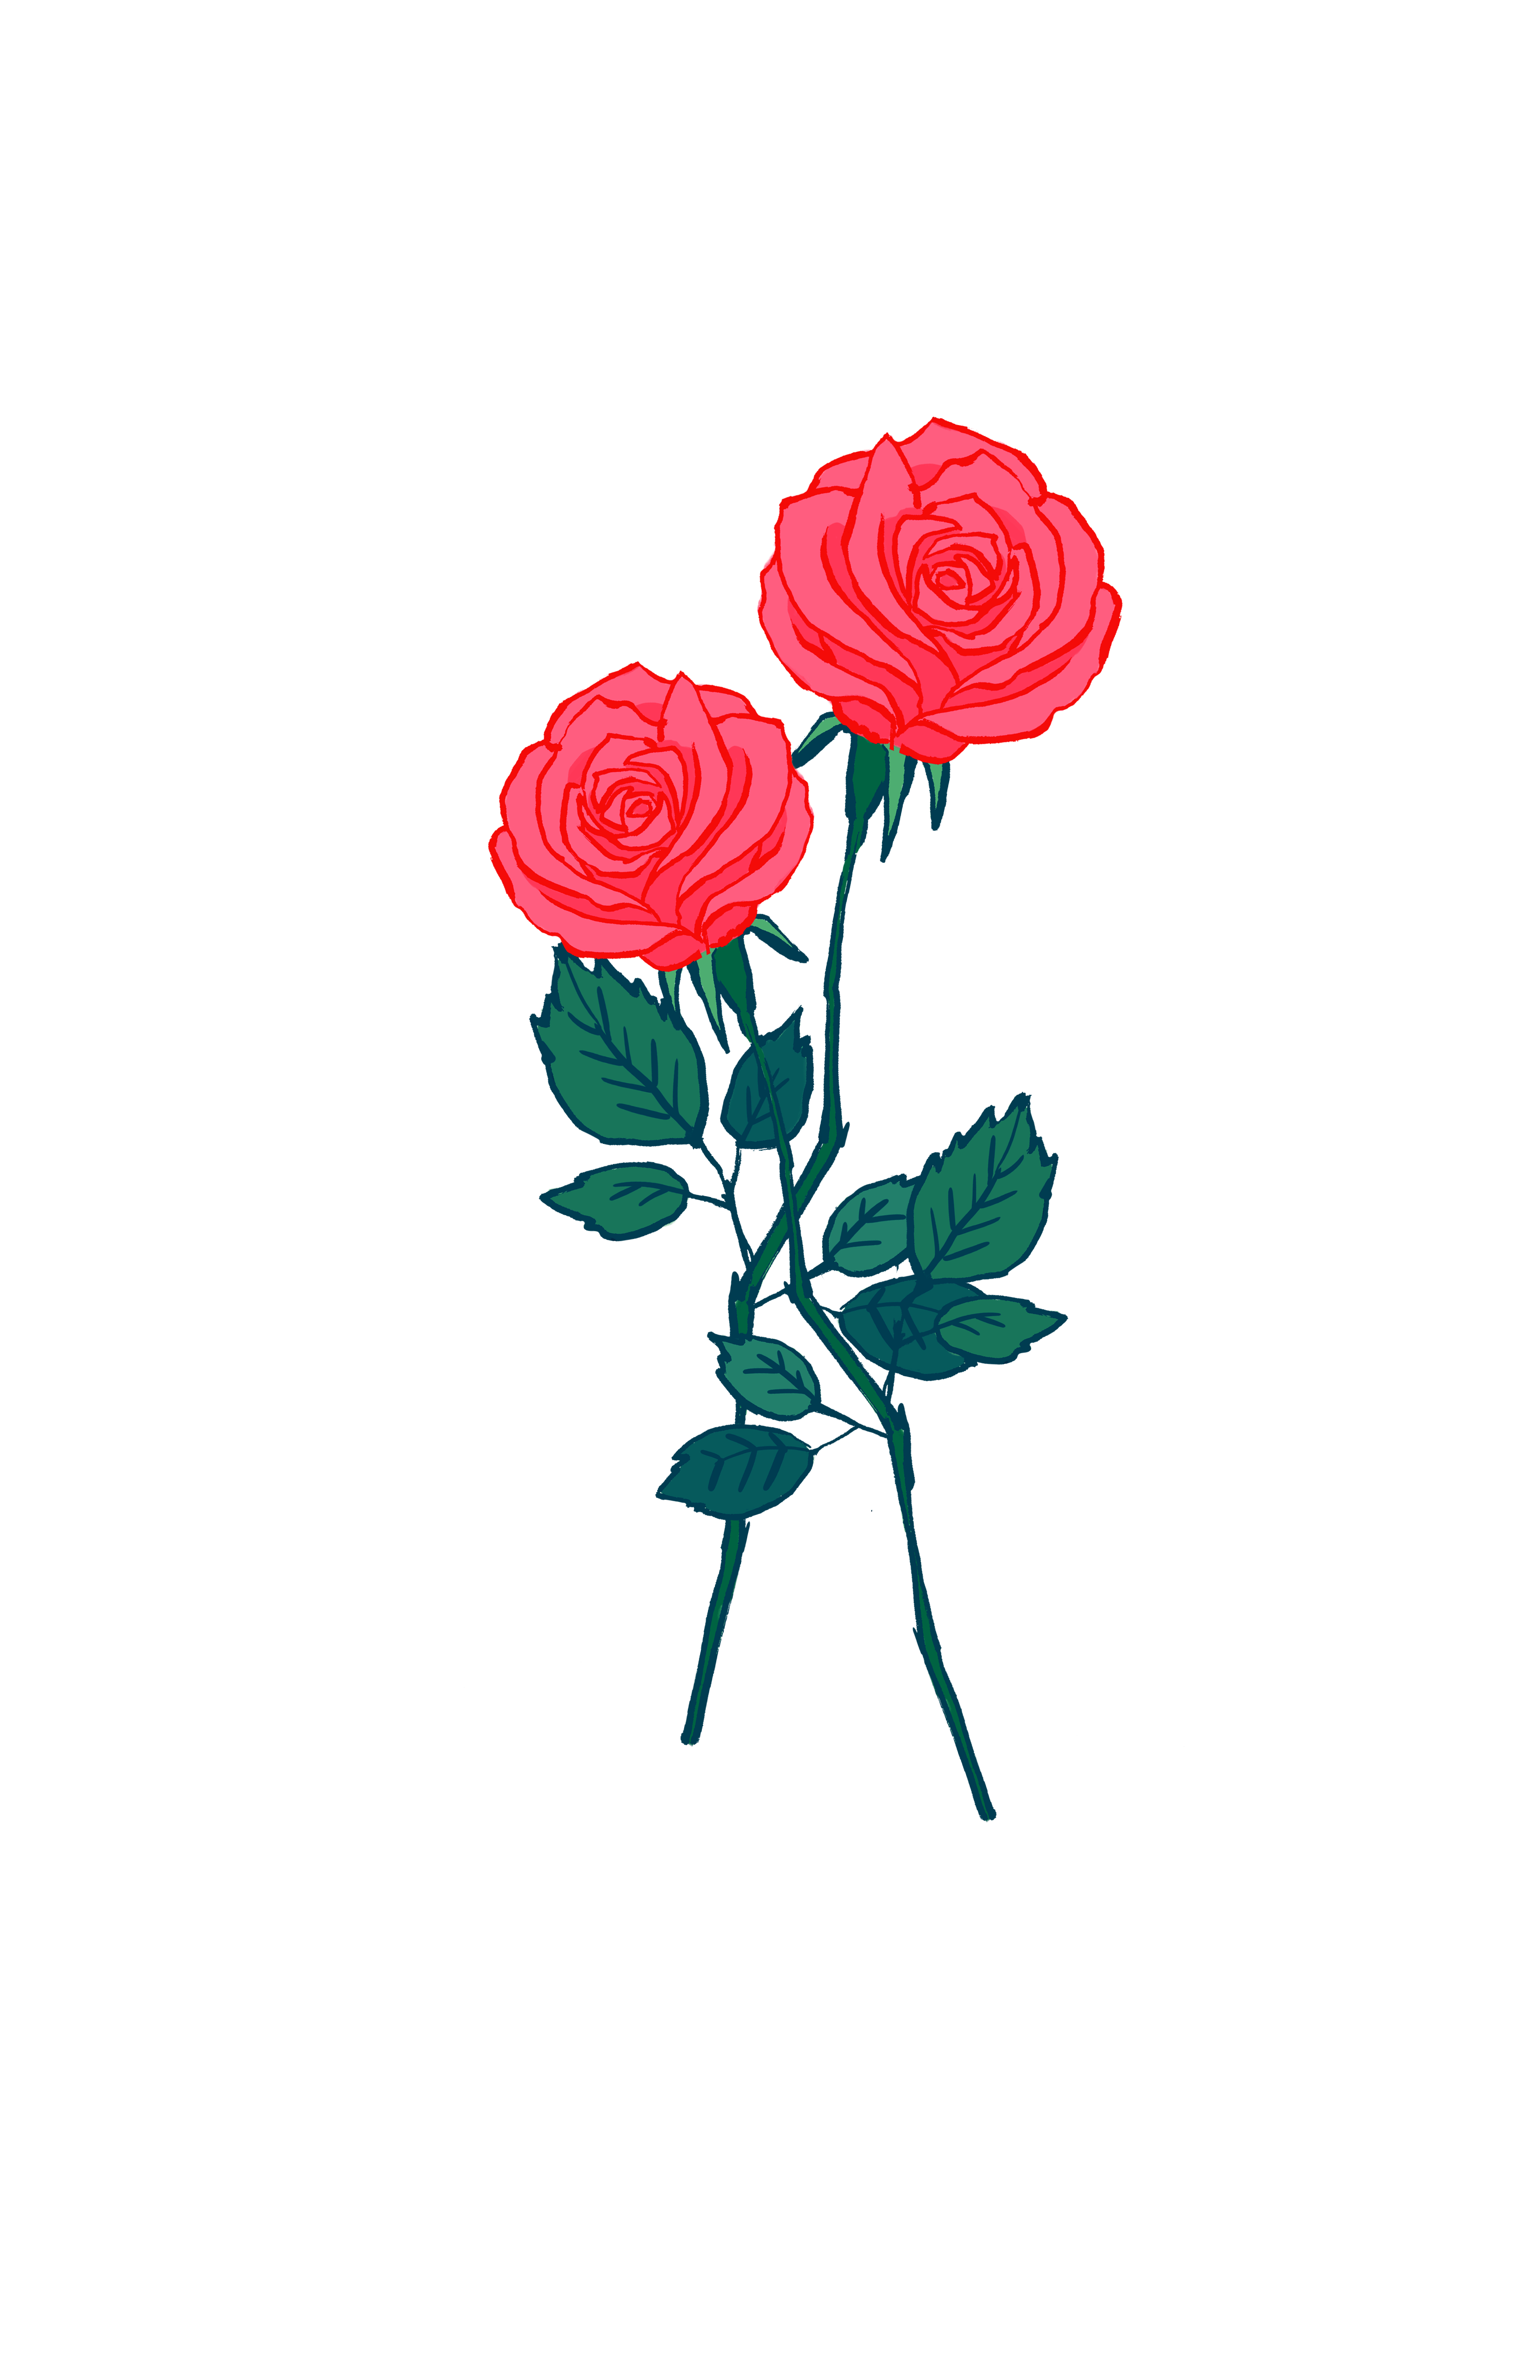 Pink #Roses. #Casetify #iPhone #Art #Design #Illustration #Rose